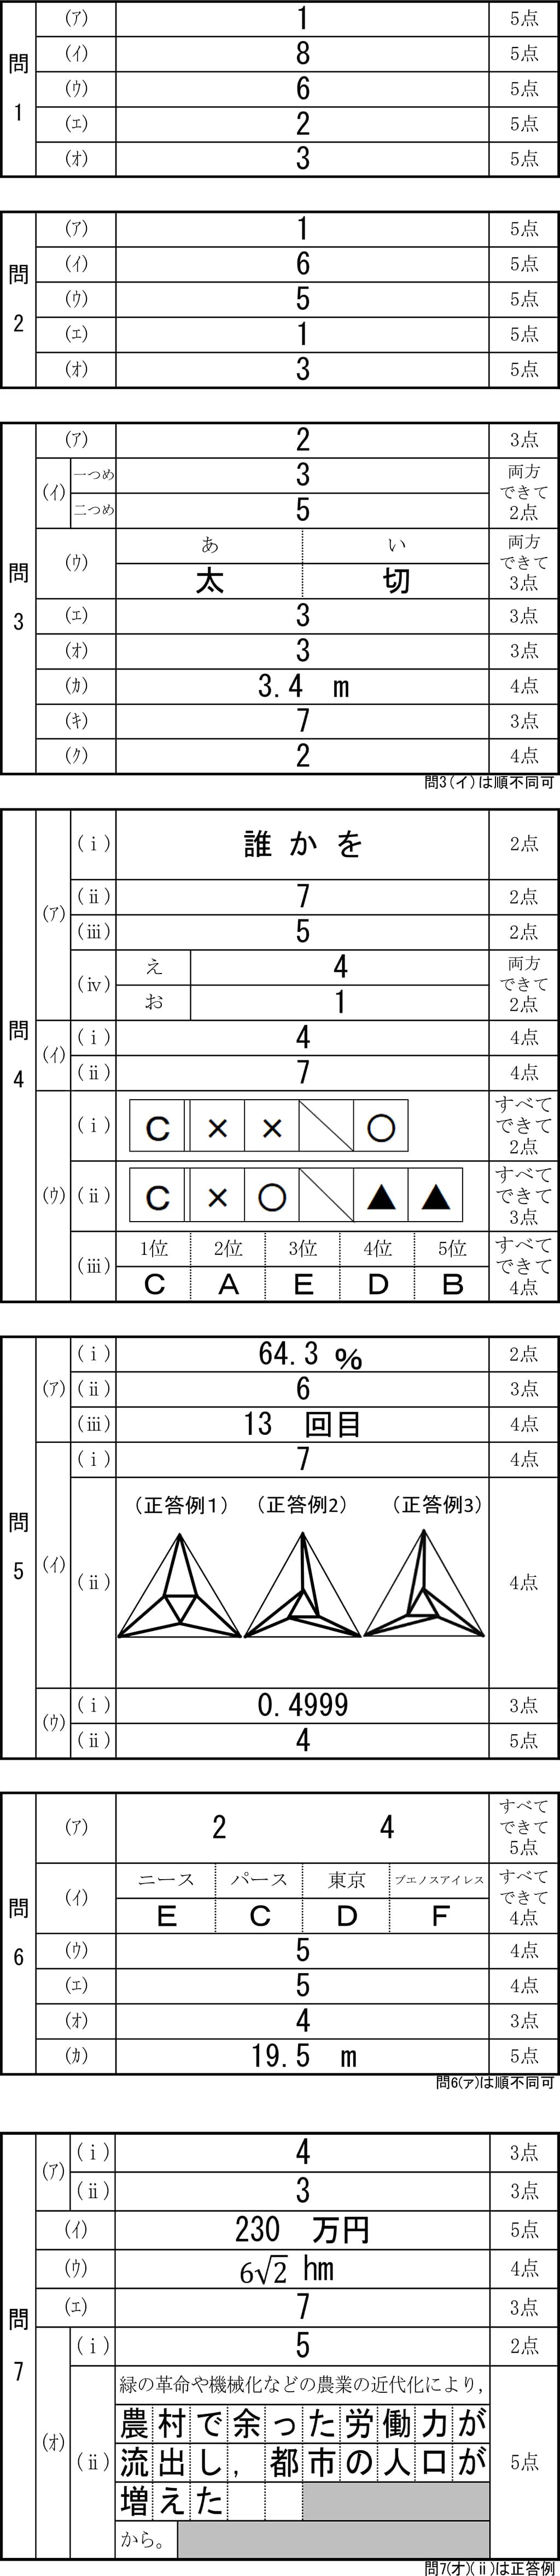 神奈川全県模試 特色検査対策模試【7回分】 - 参考書